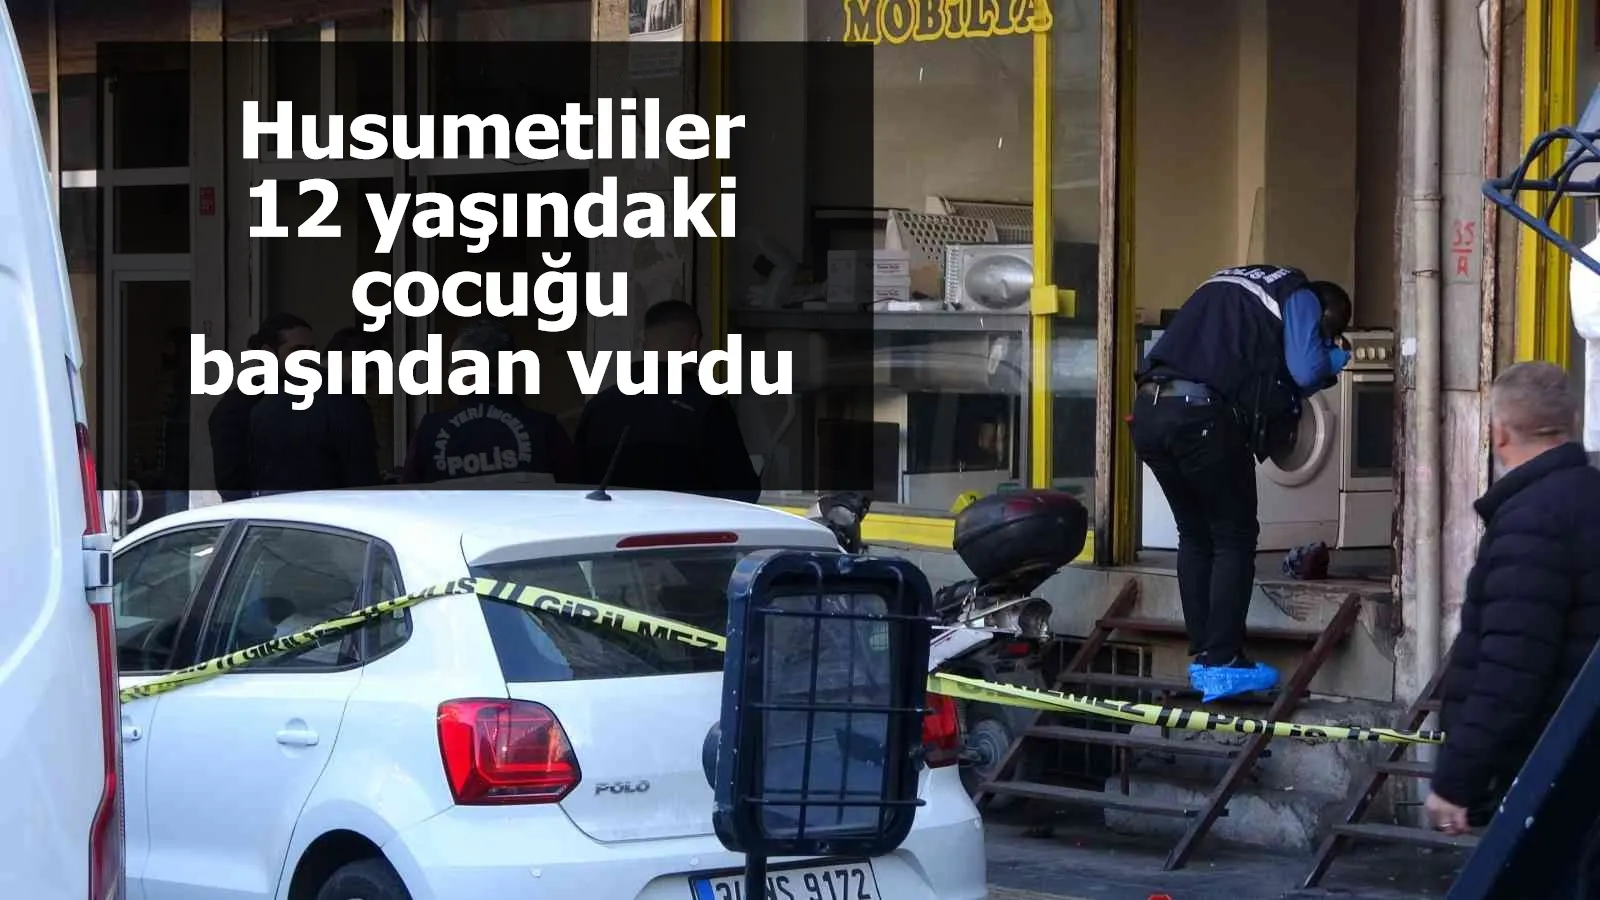 Diyarbakır'da vahşet! Husumetliler 12 yaşındaki çocuğu başından vurdu